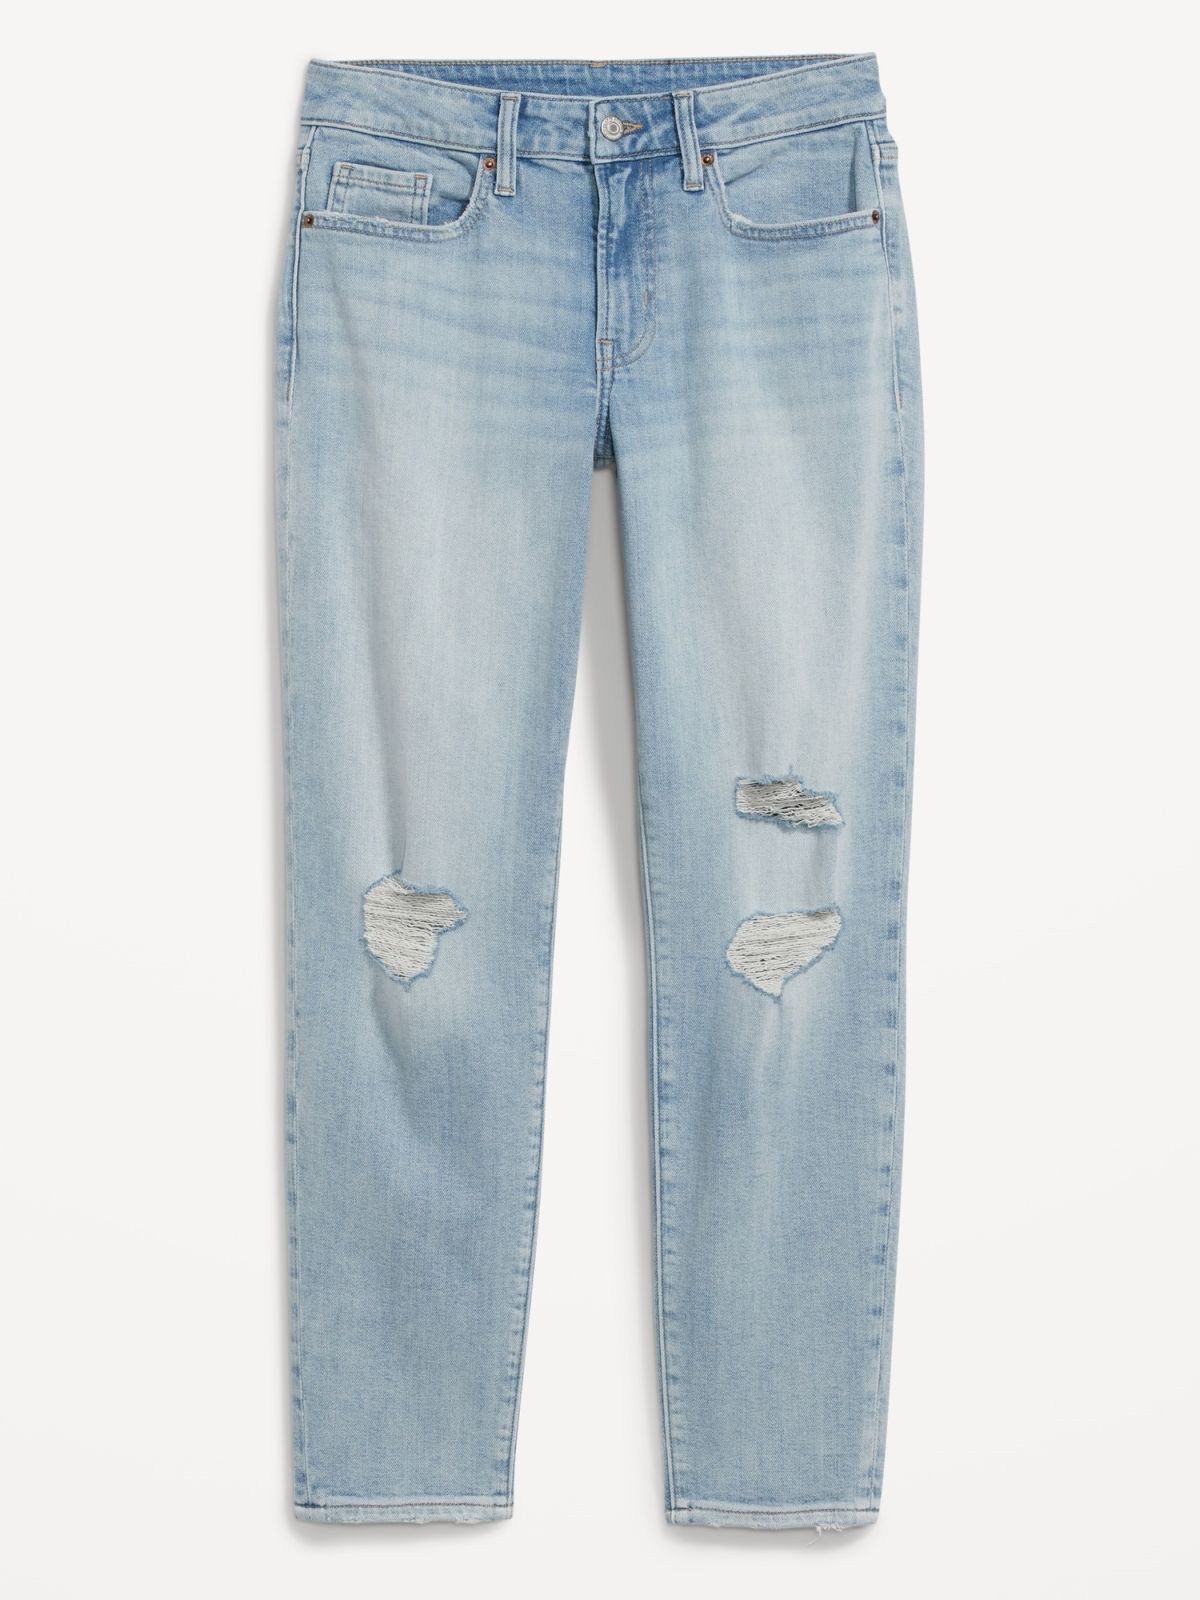  ג'ינס קרעים בגזרה ישרה של OLD NAVY